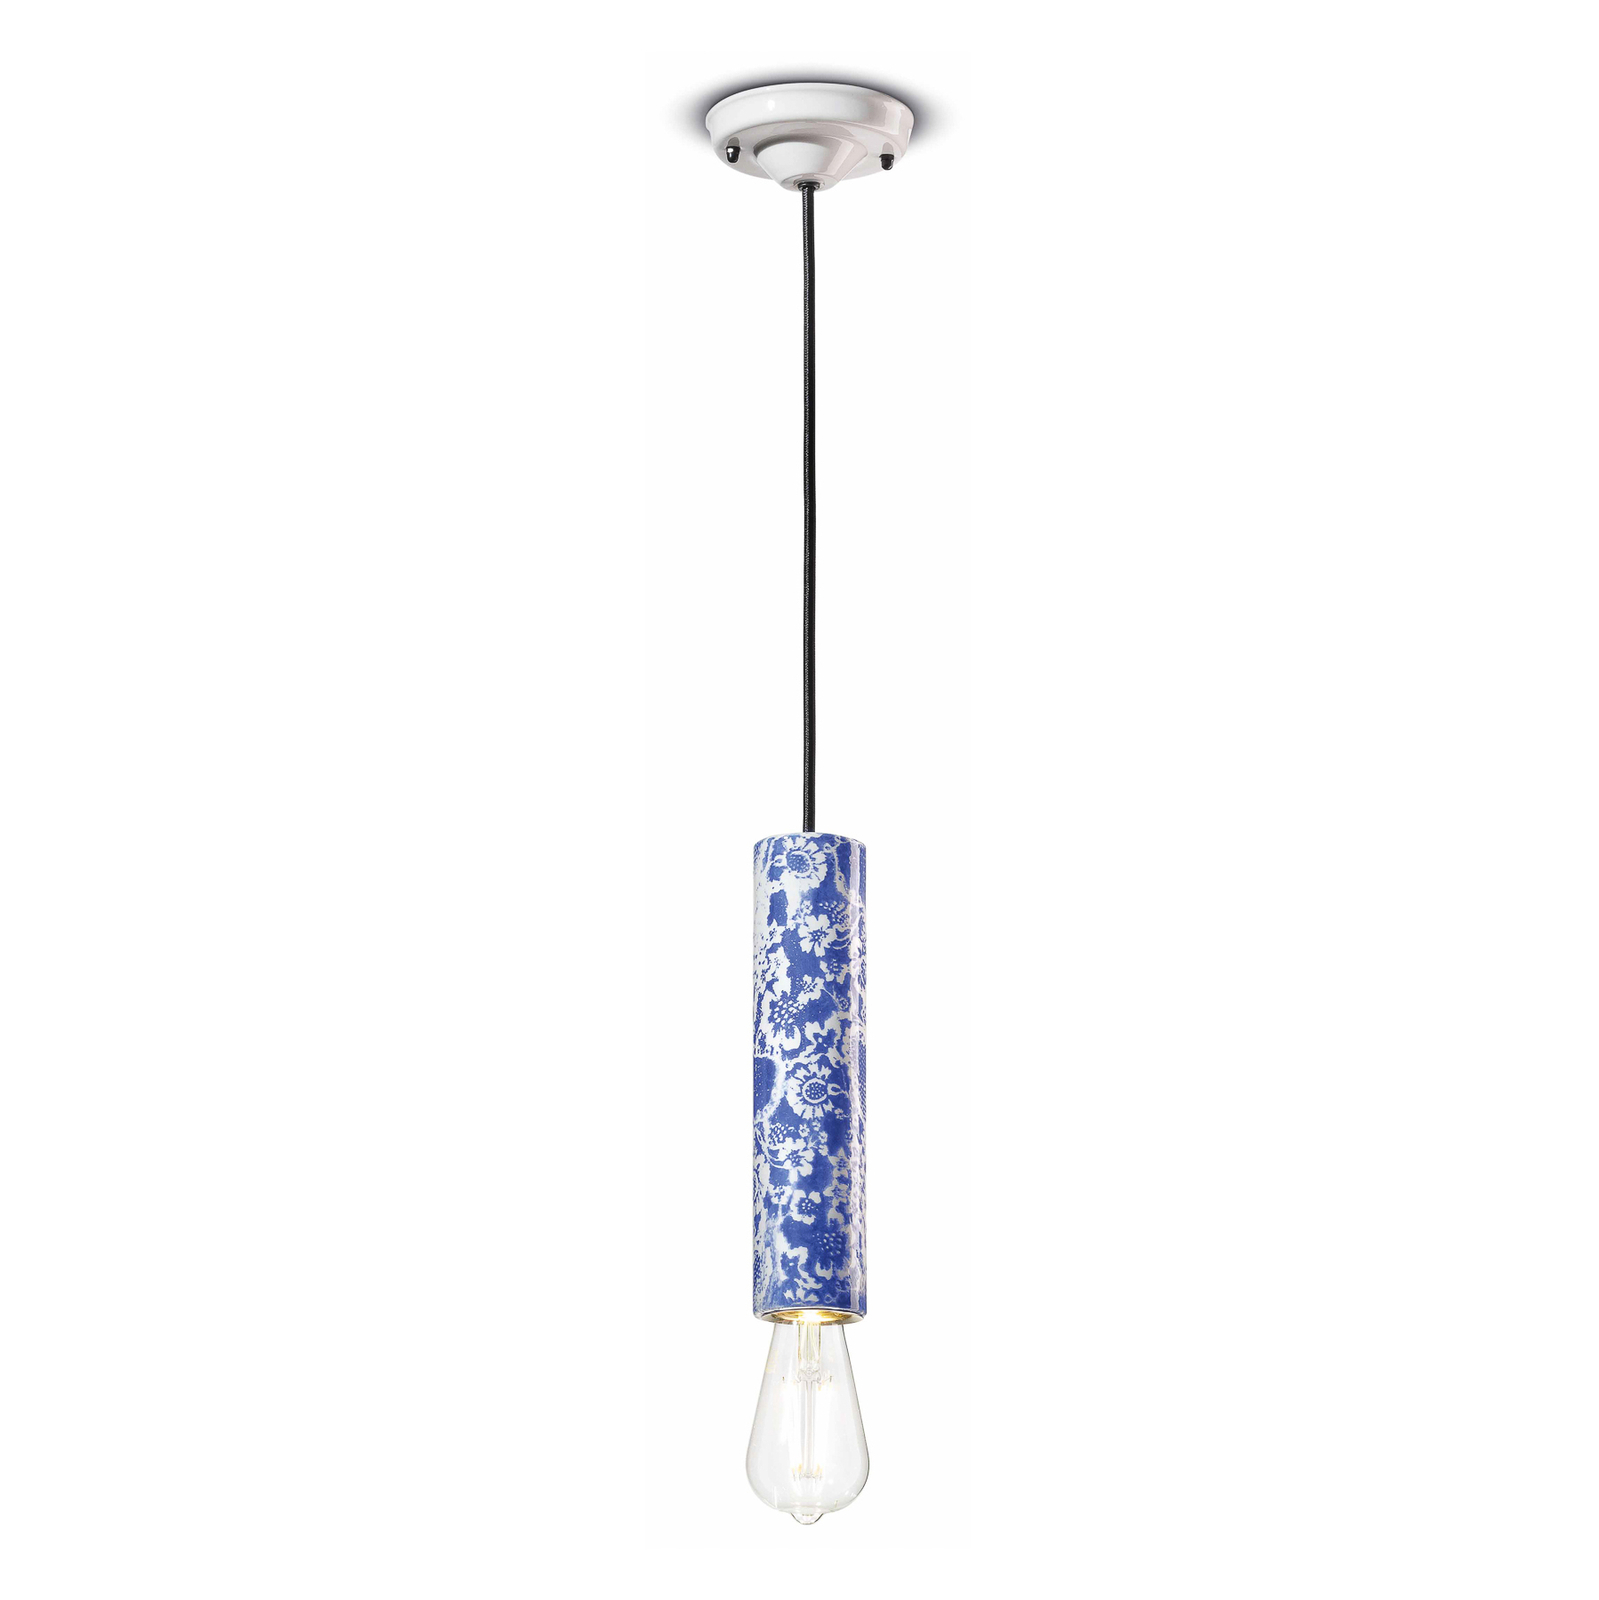 Hanglamp PI met bloemenmotief, Ø 5,5 cm blauw/wit